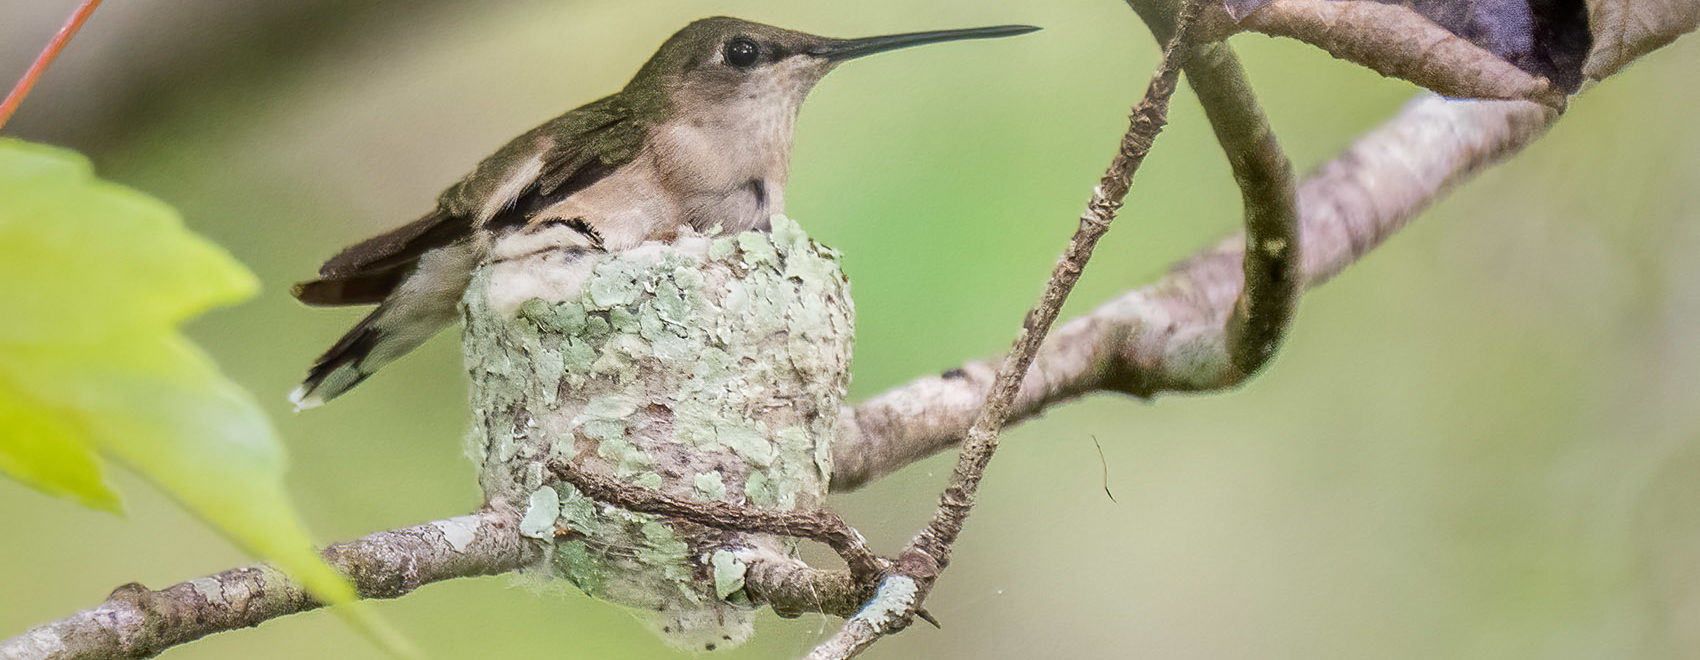 Hummingbird on nest on tree branch Louisiana